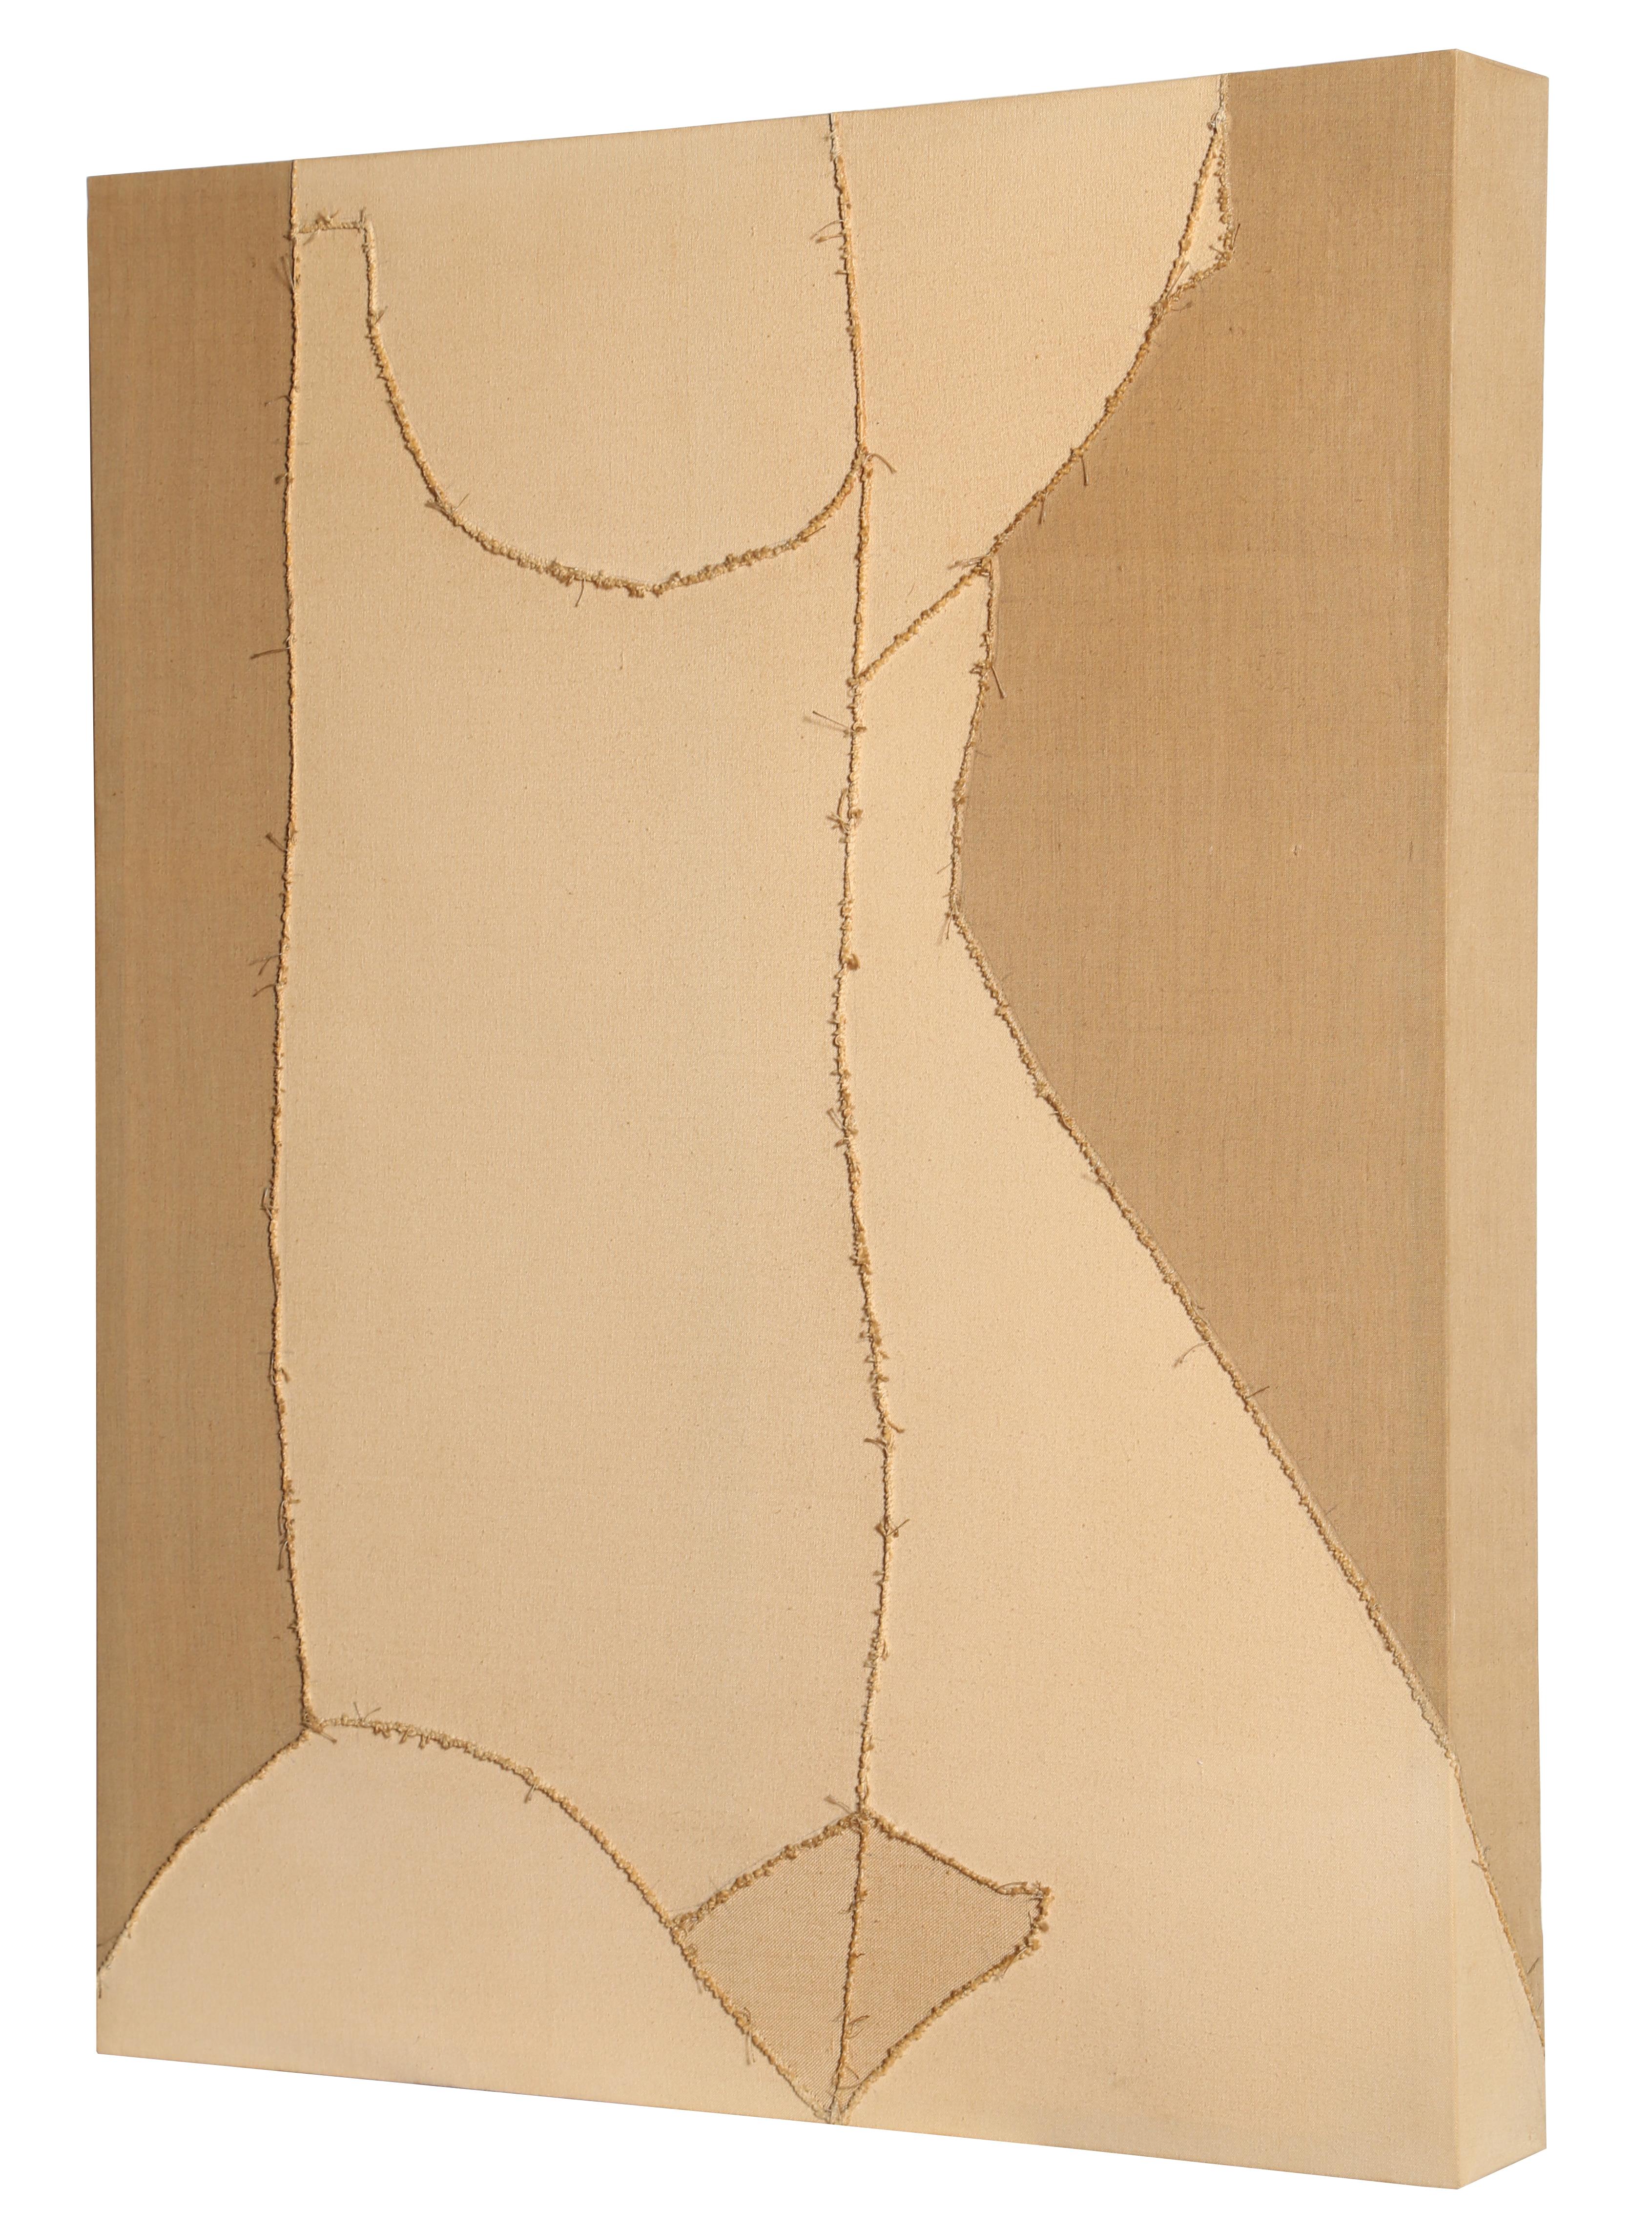 Künstler: Lou Fink, Amerikaner (1925 - 1980)
Titel: Nackt
Jahr: 1974
Medium:	Genähtes Segeltuch, verso signiert
Größe: 38 x 30 x 4 Zoll